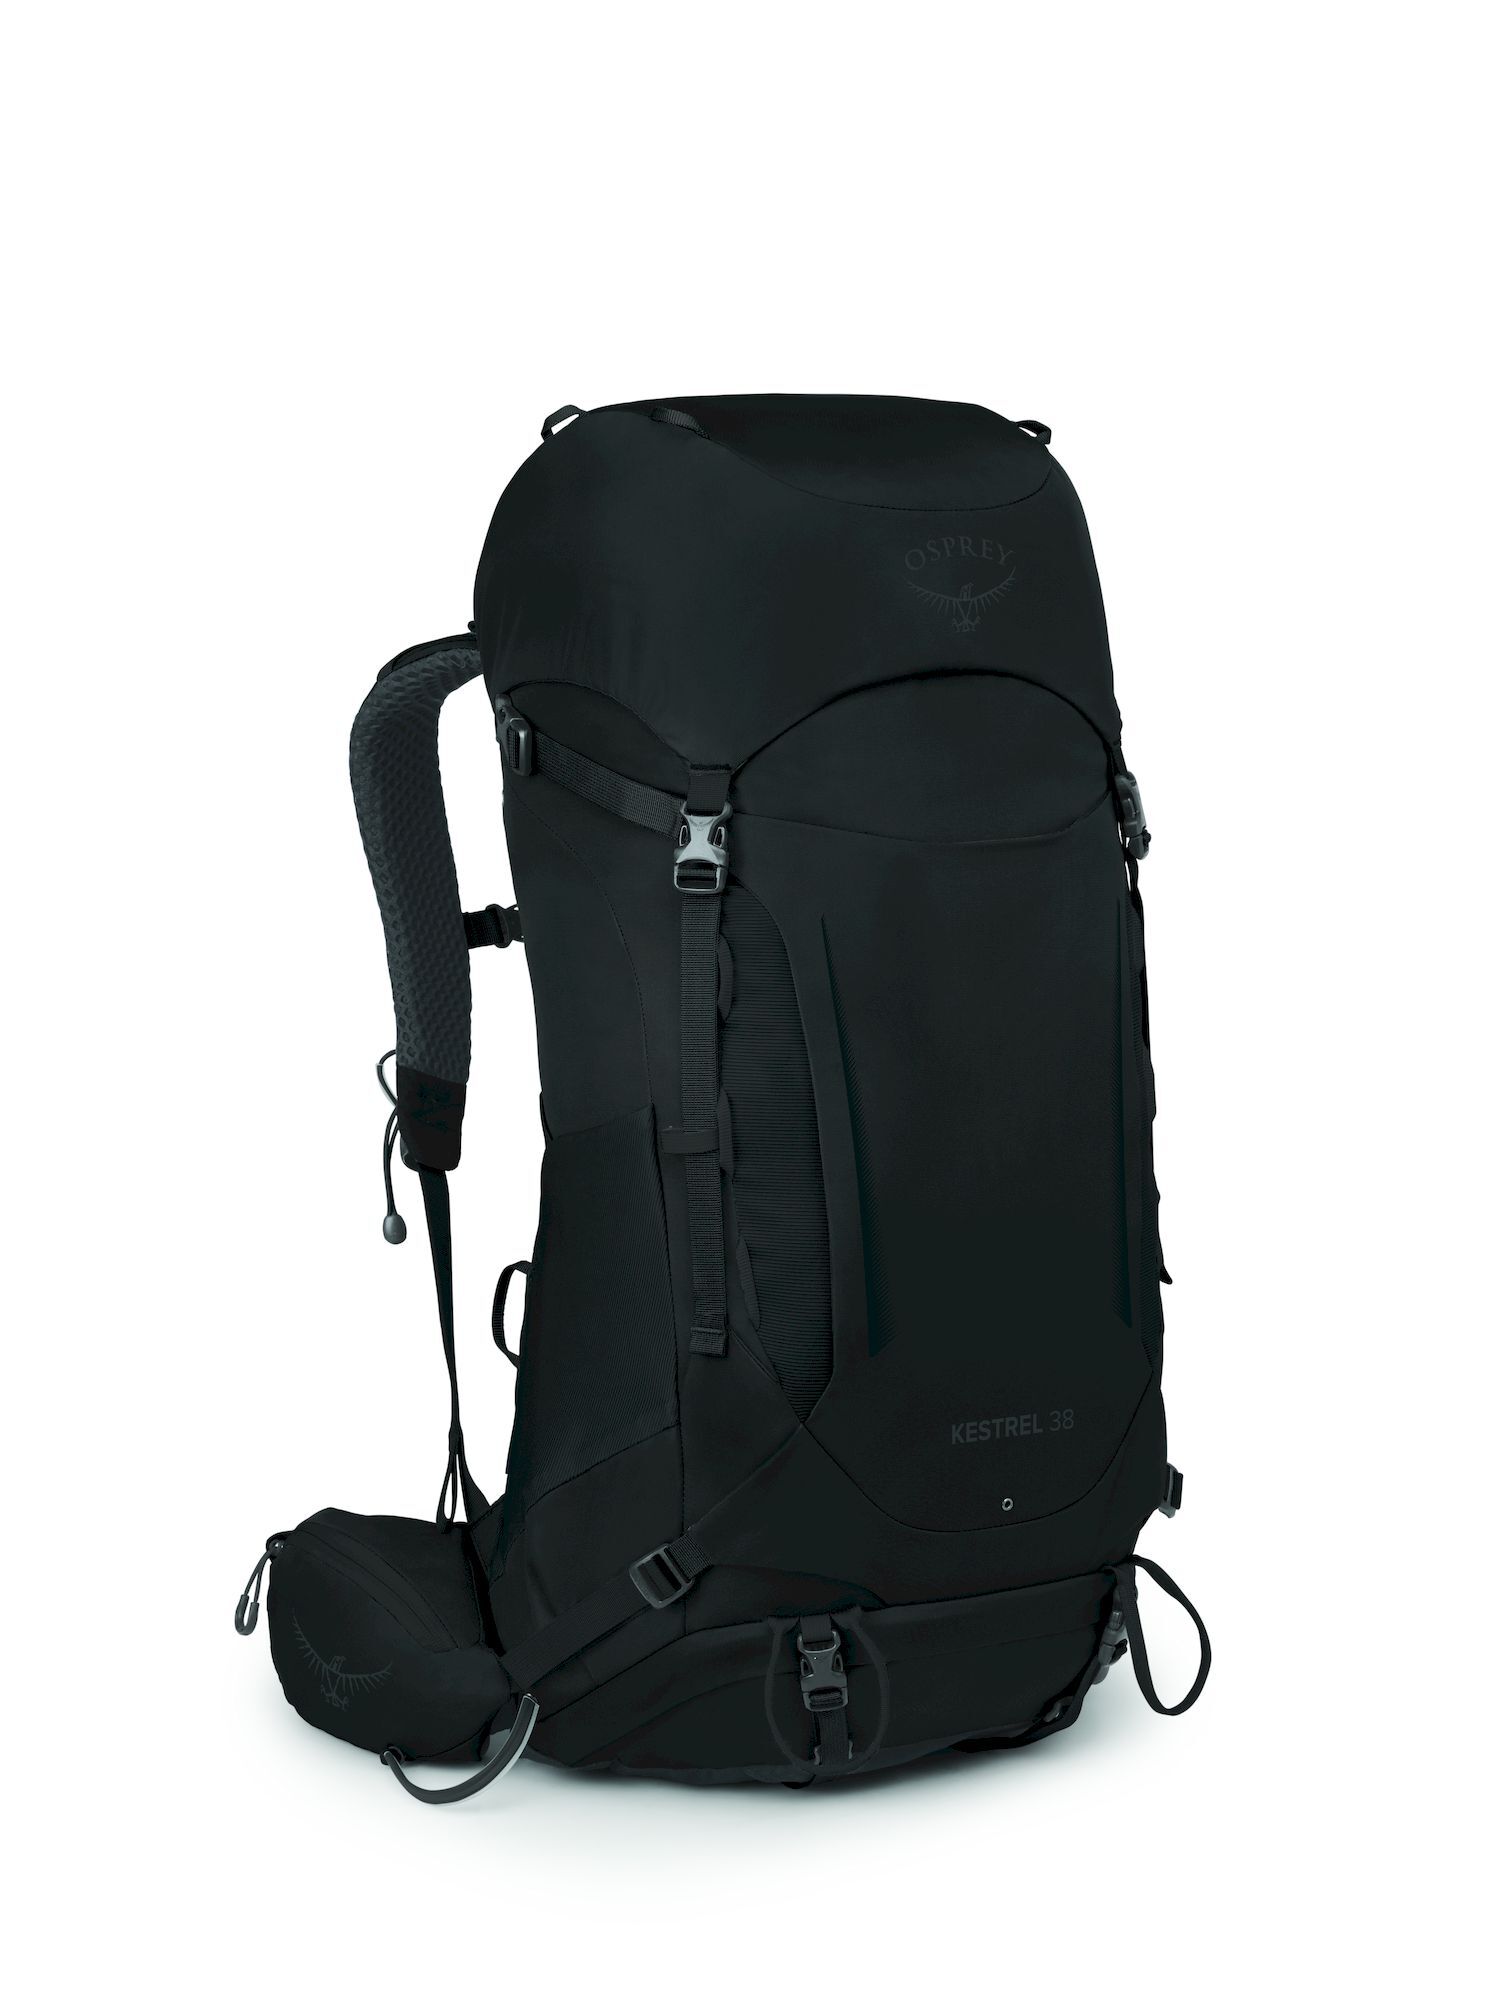 Osprey Kestrel 38 - Hiking backpack - Men's